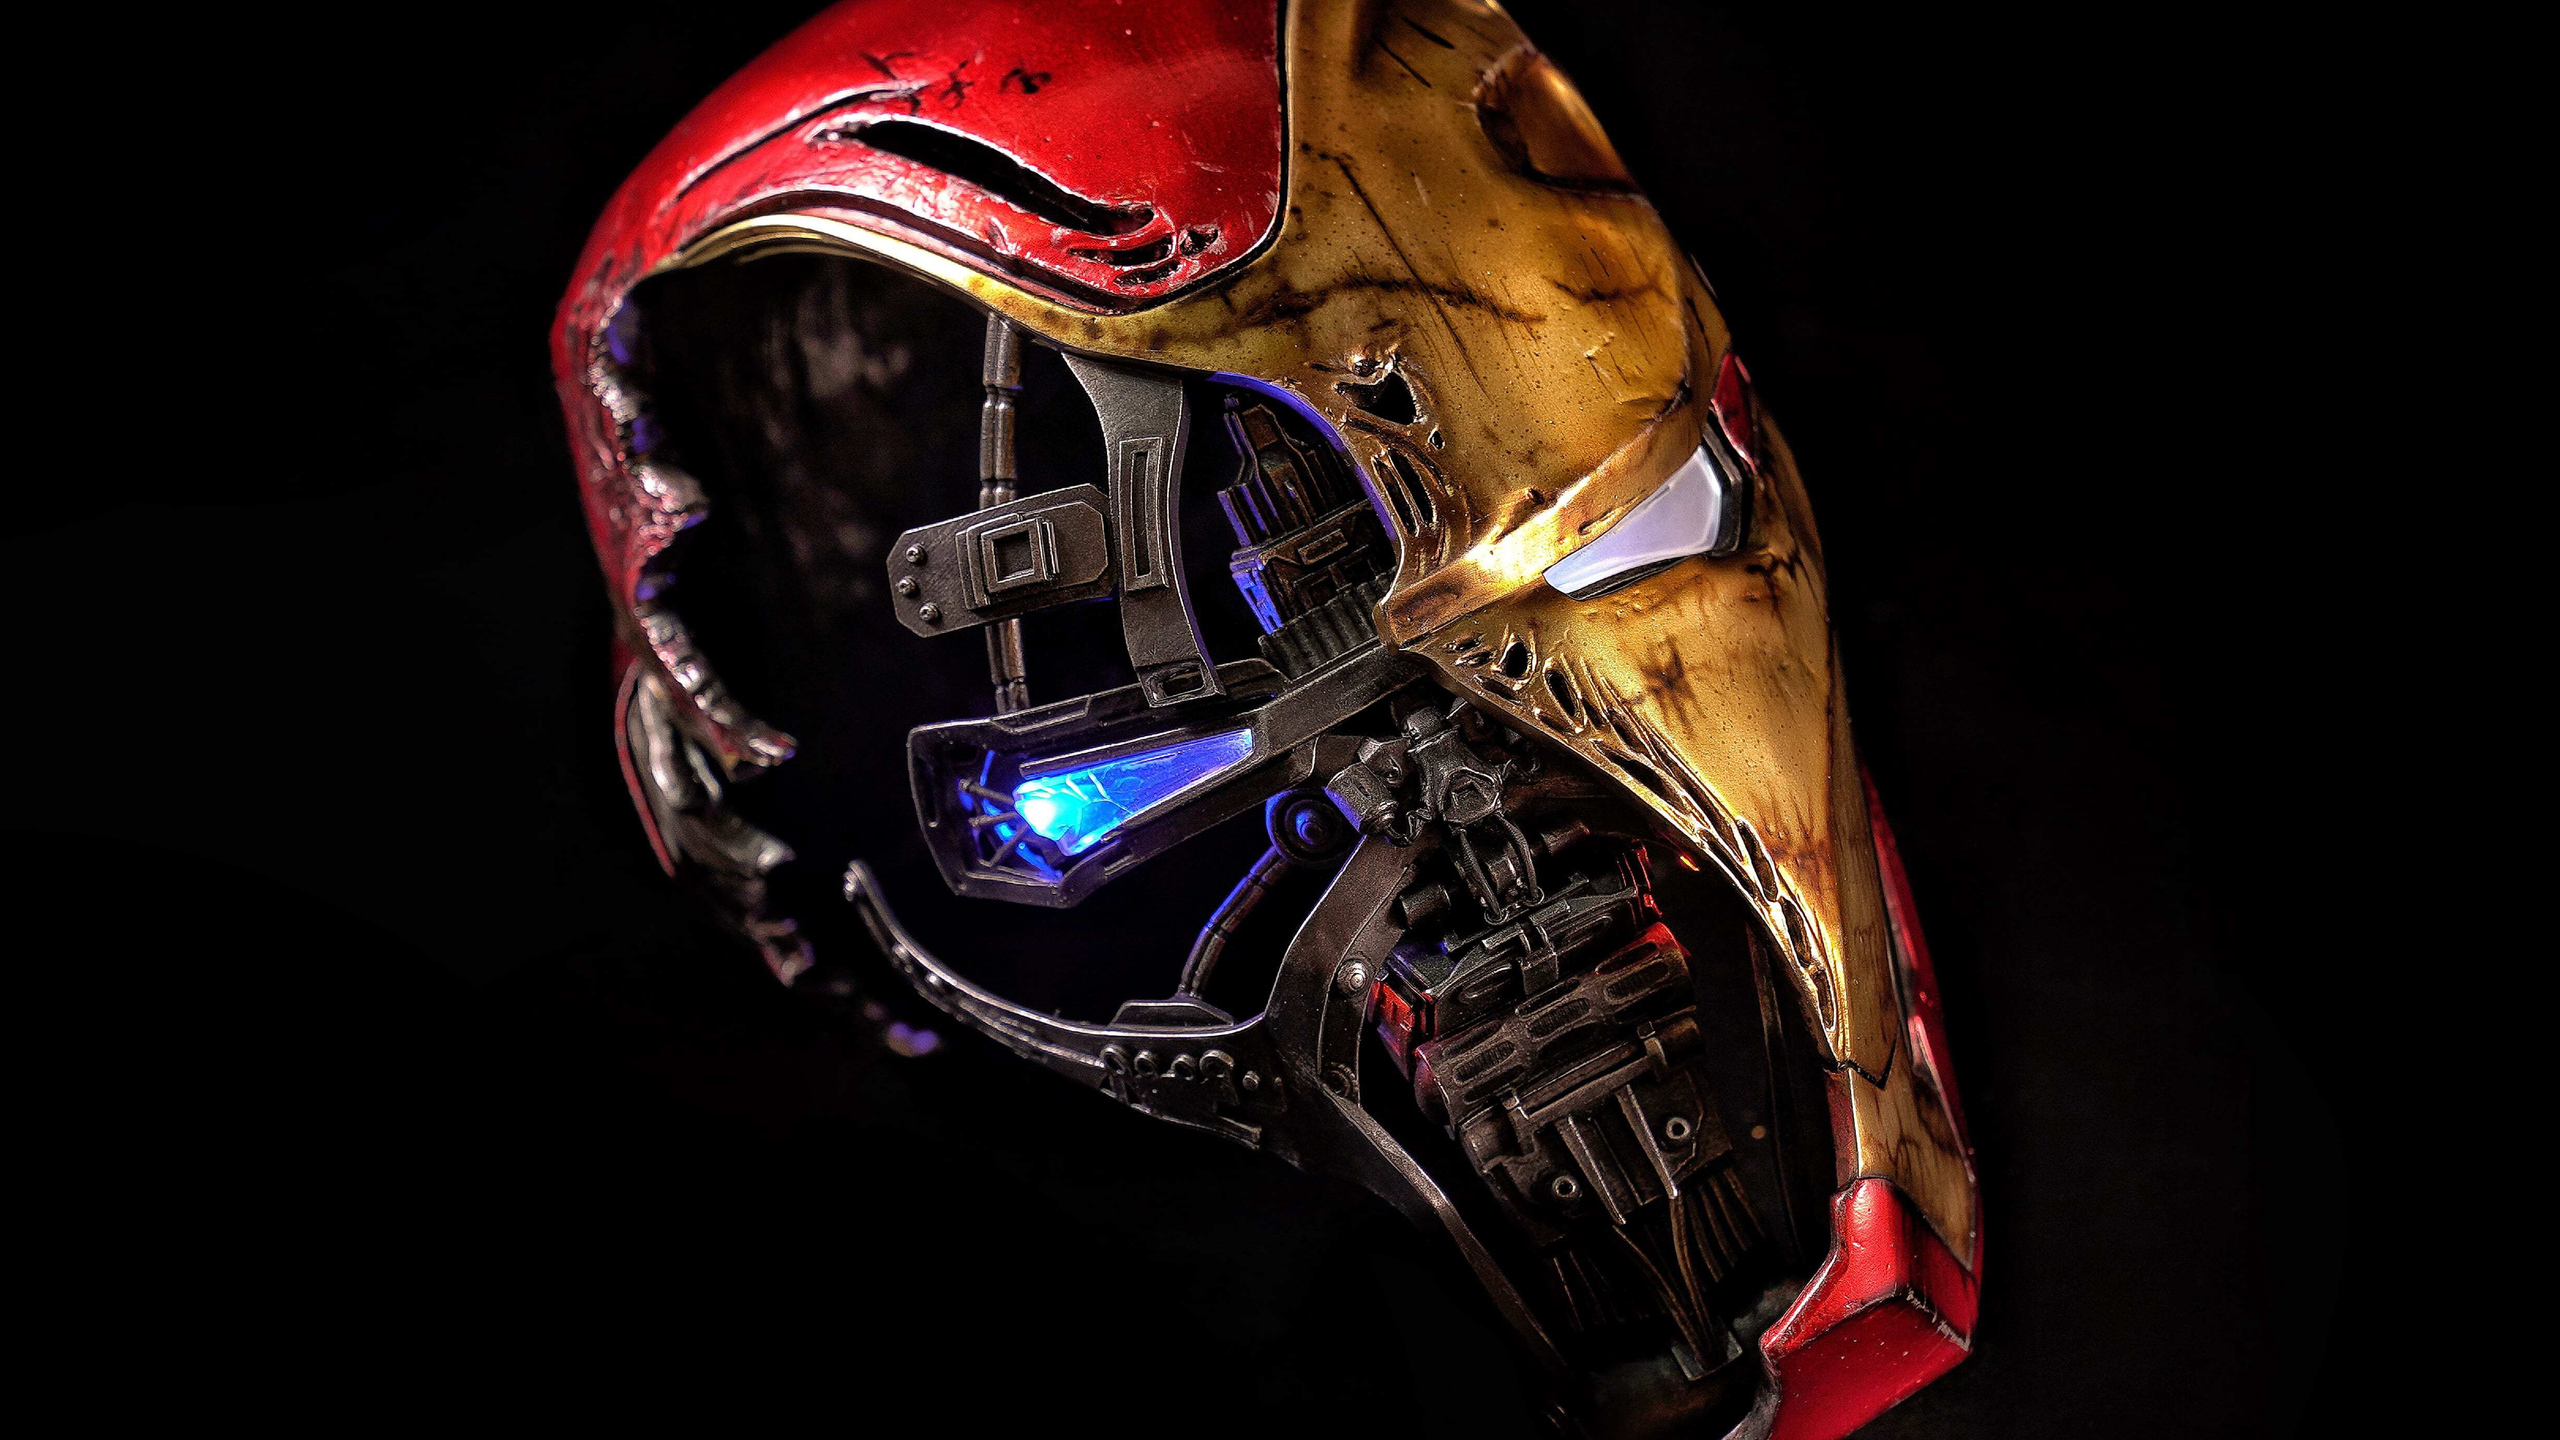 2560x1440 Iron Man Mask 5k 2019 1440P Resolution HD 4k ...